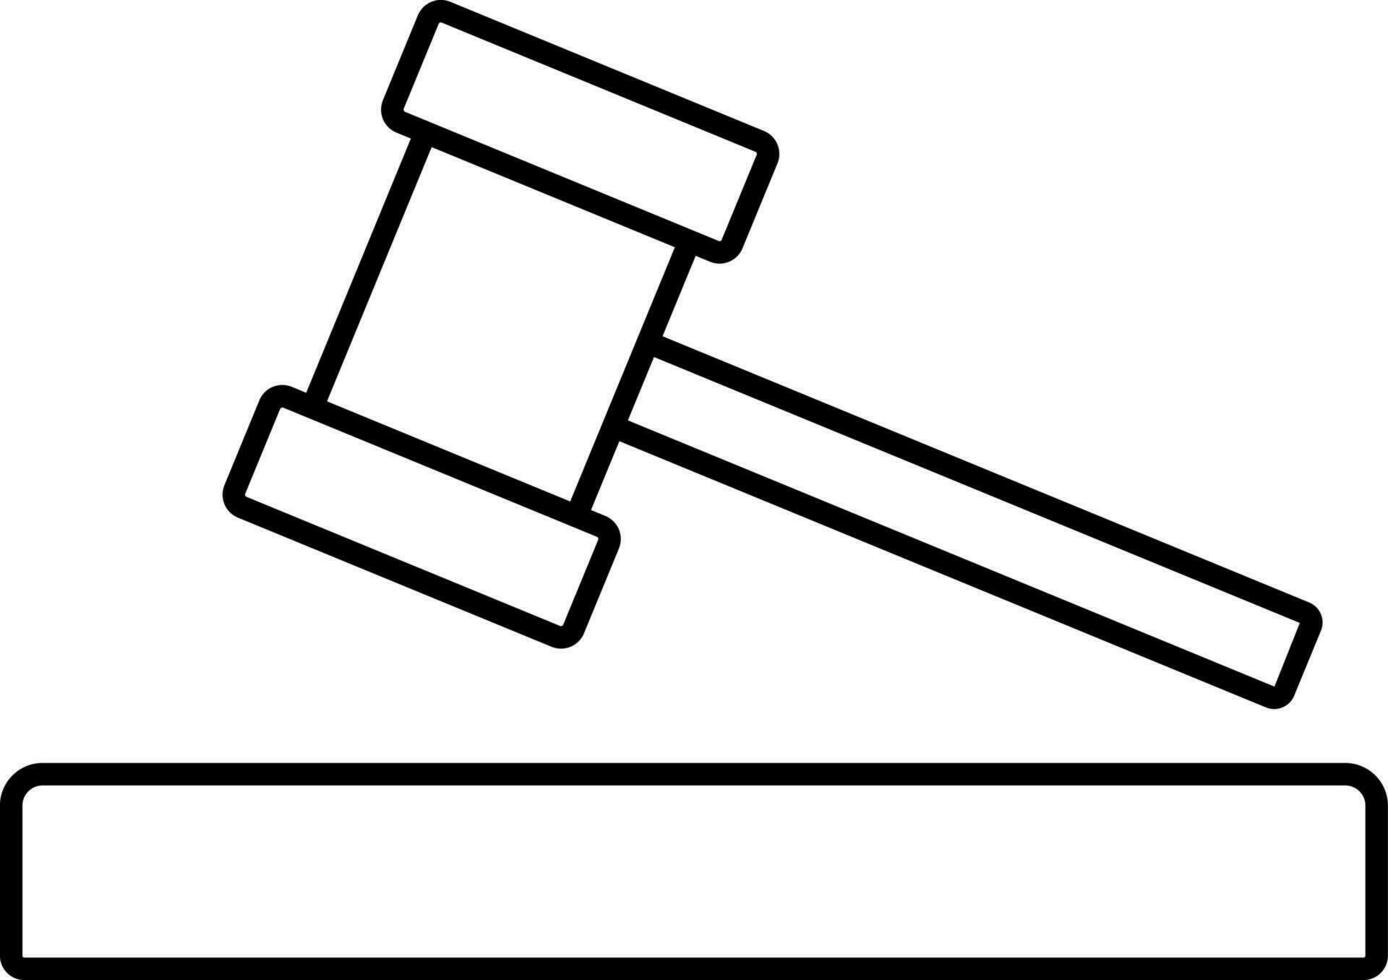 Versteigerung Hammer Zeichen oder Symbol. vektor